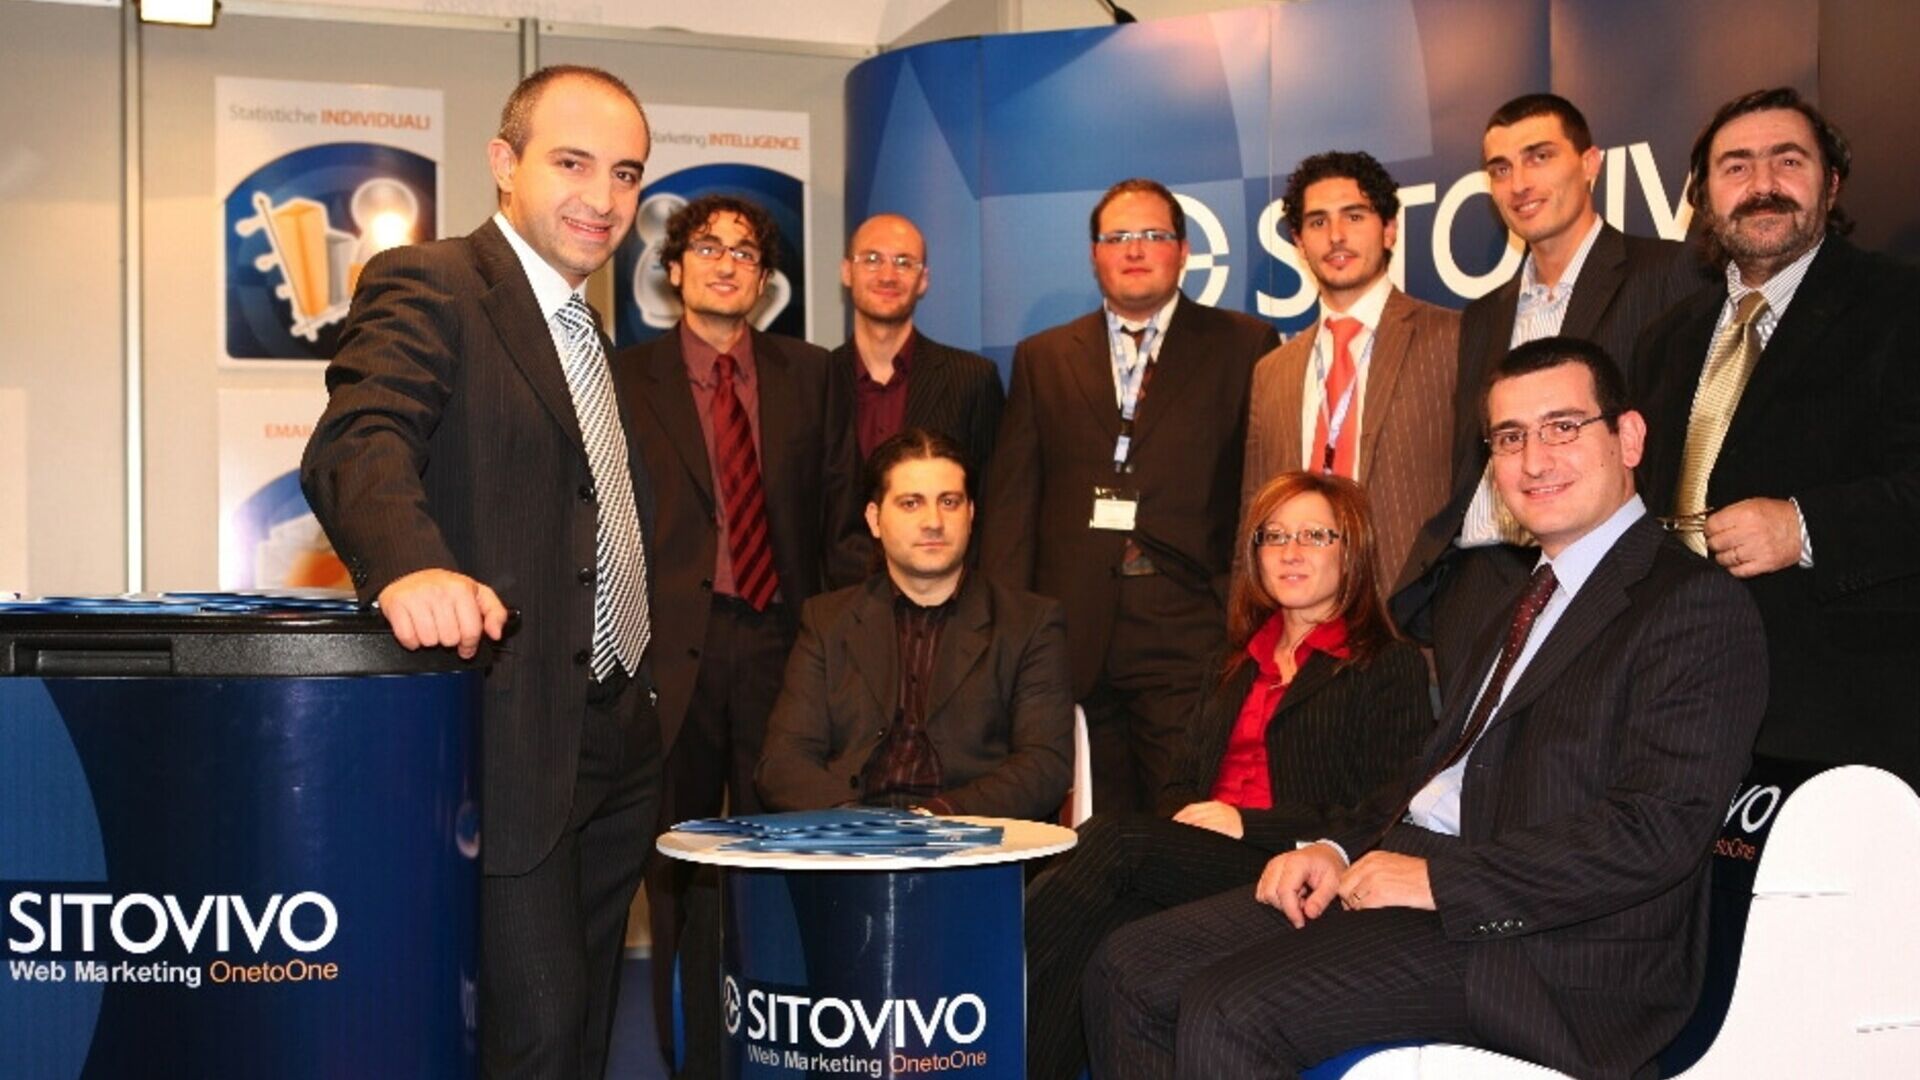 Zamestnanci spoločnosti SitoVivo v Turíne a Giarre (Catania)